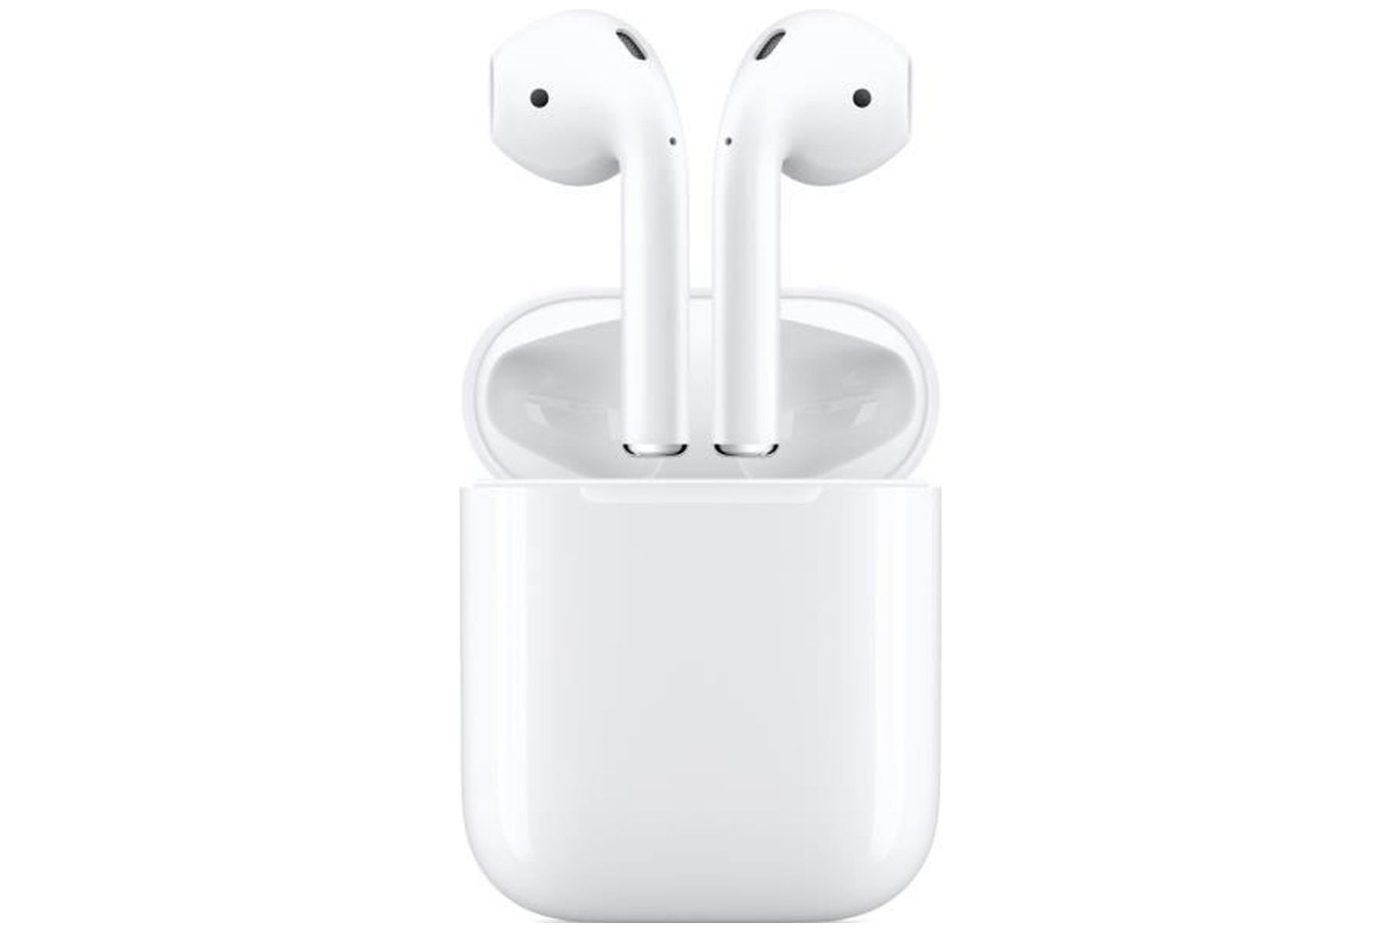 pas gratuits mais très remisés, les écouteurs Apple sont une folie